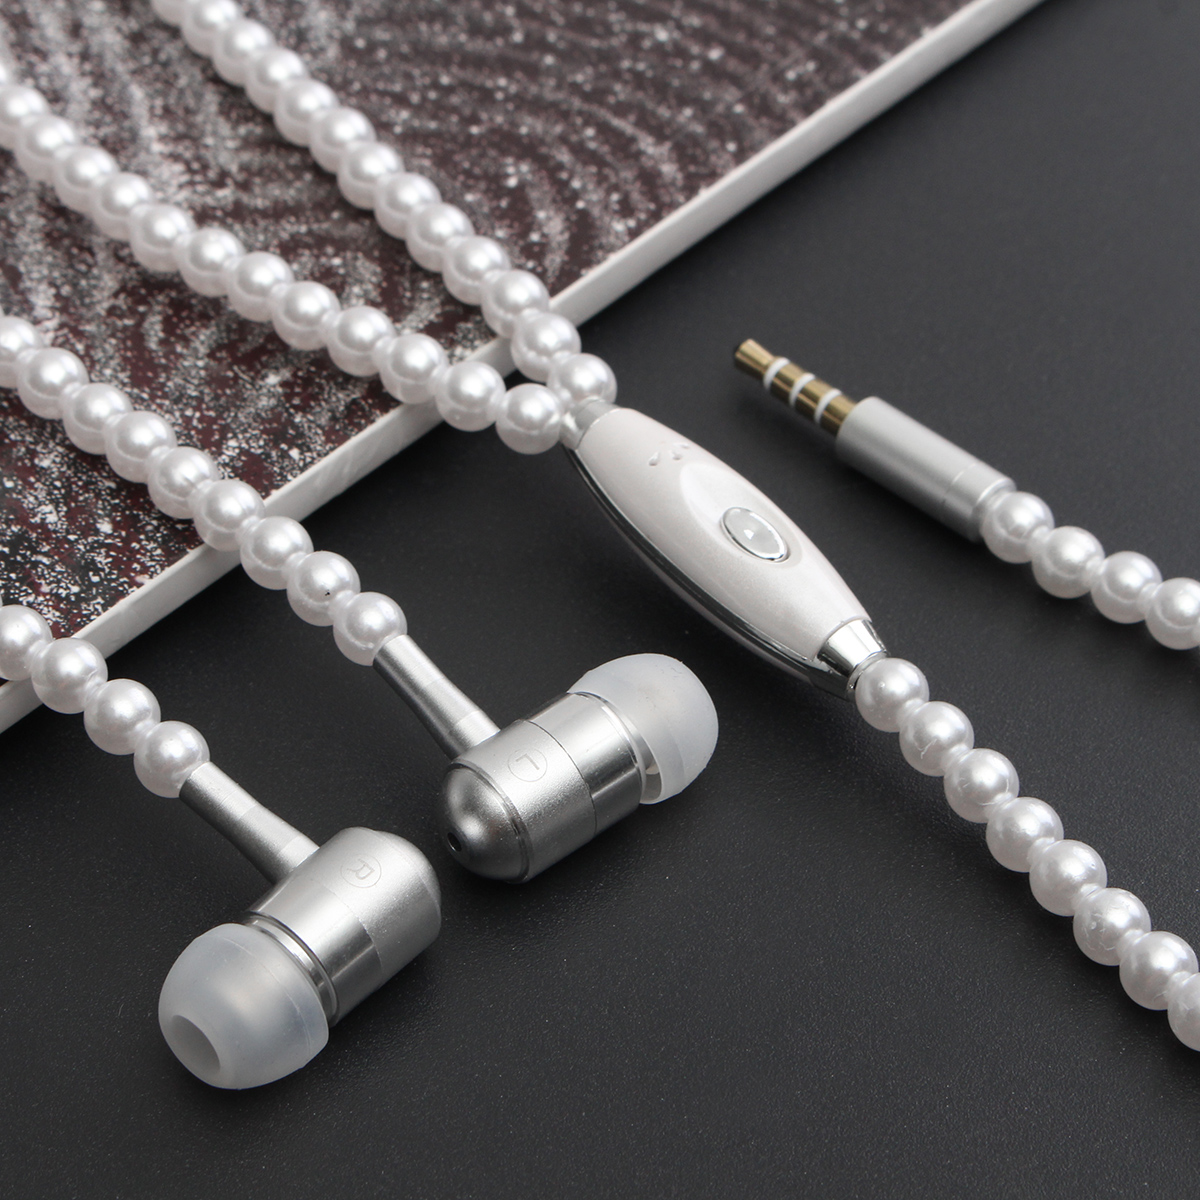 Pearls Earphones Jewellery Necklace 3.5mm Earphone Headphone For Smartphone